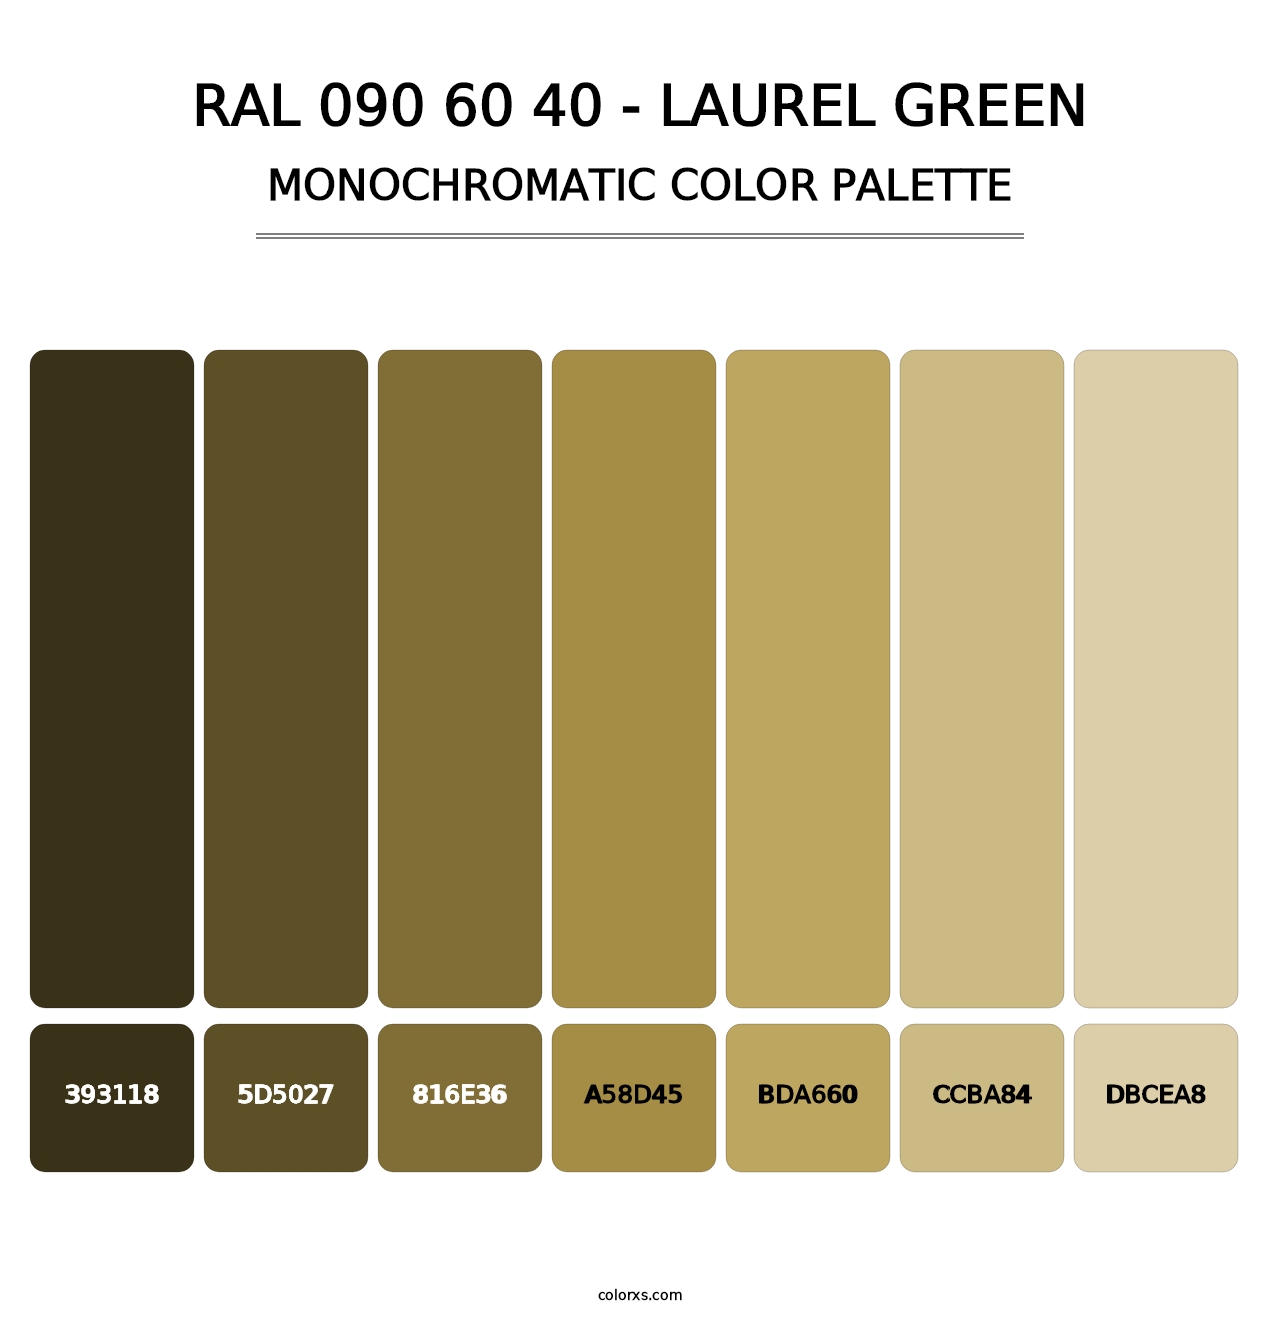 RAL 090 60 40 - Laurel Green - Monochromatic Color Palette